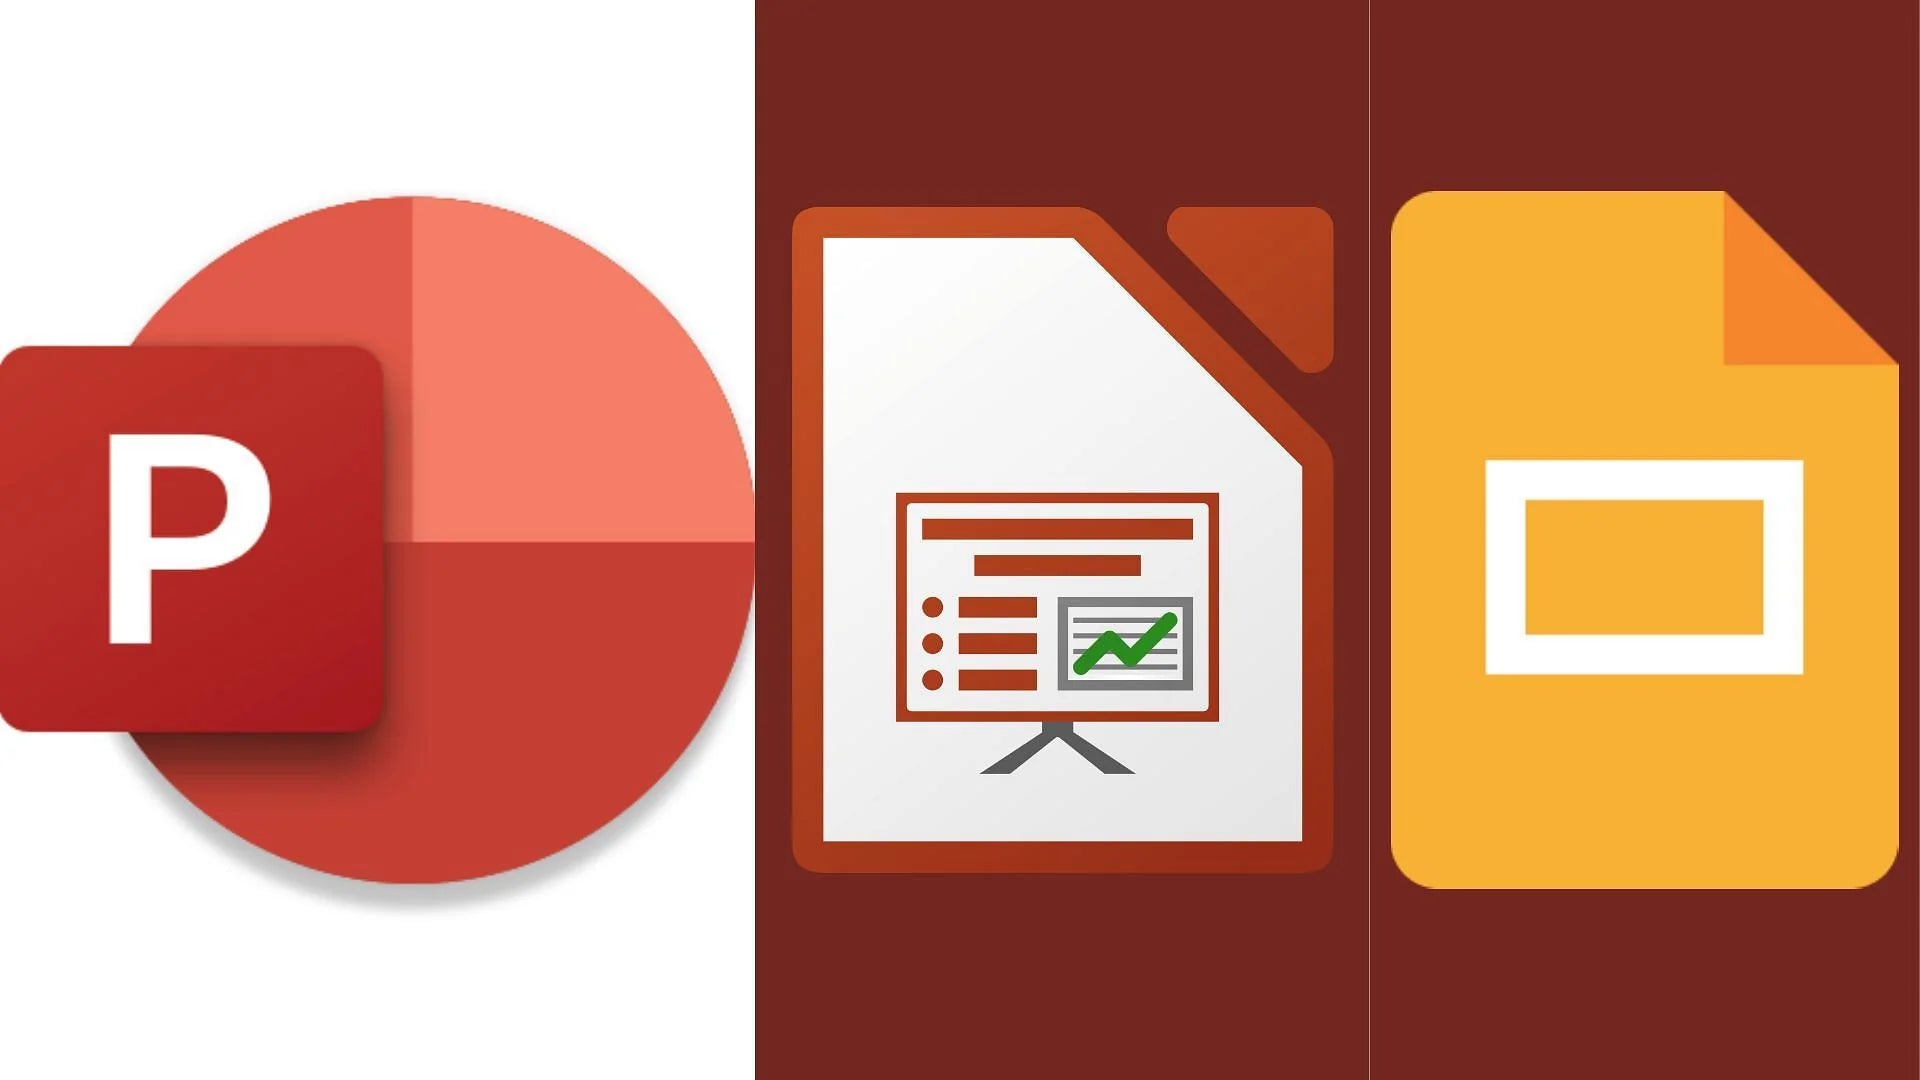 PowerPoint vs LibreOffice Impress comparison